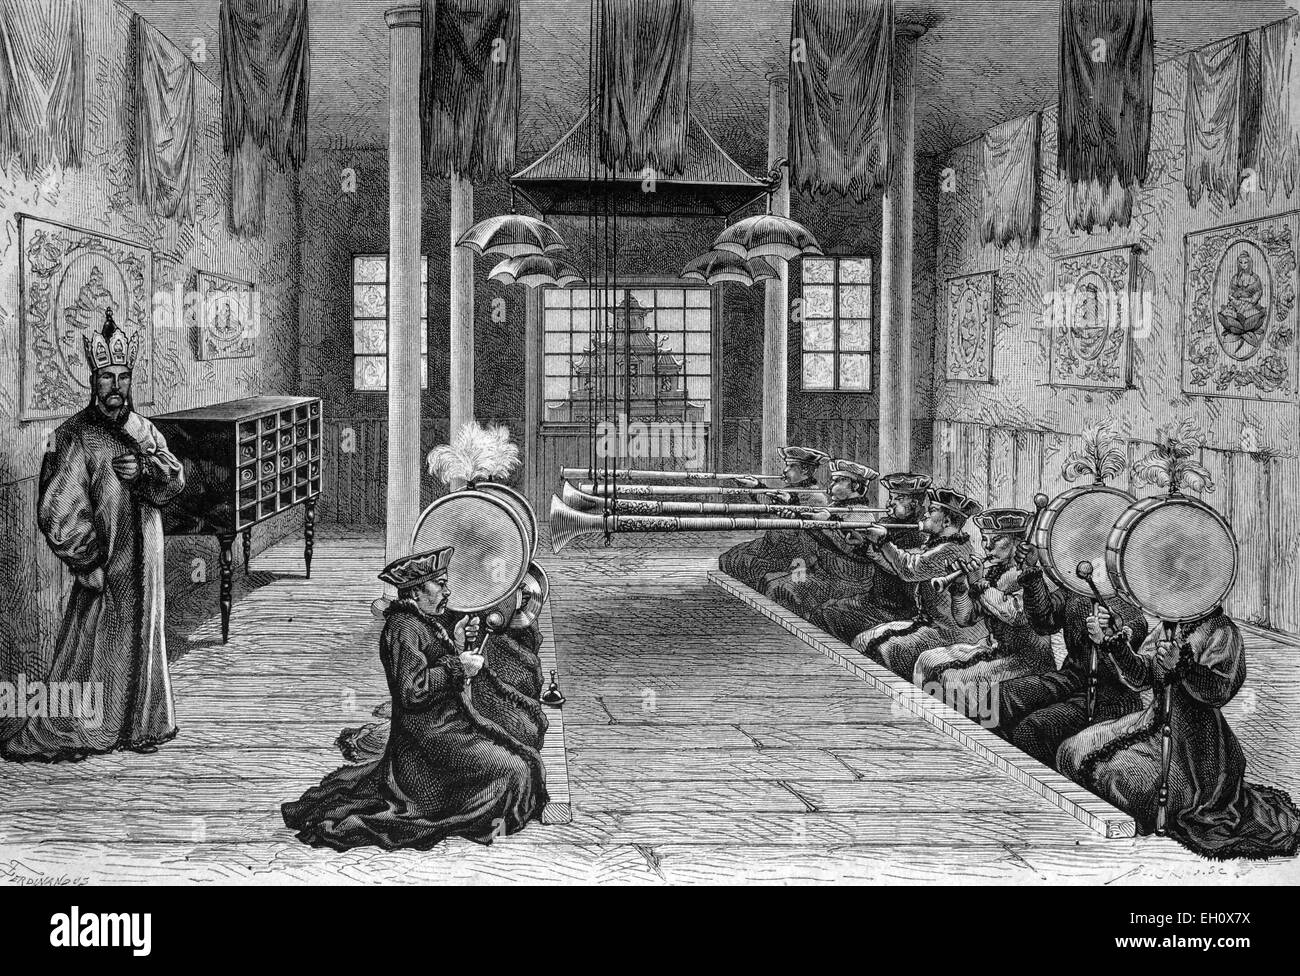 Les musiques à la pagode de Kurul Kalmuck, la Chine, l'illustration historique, vers 1886 Banque D'Images